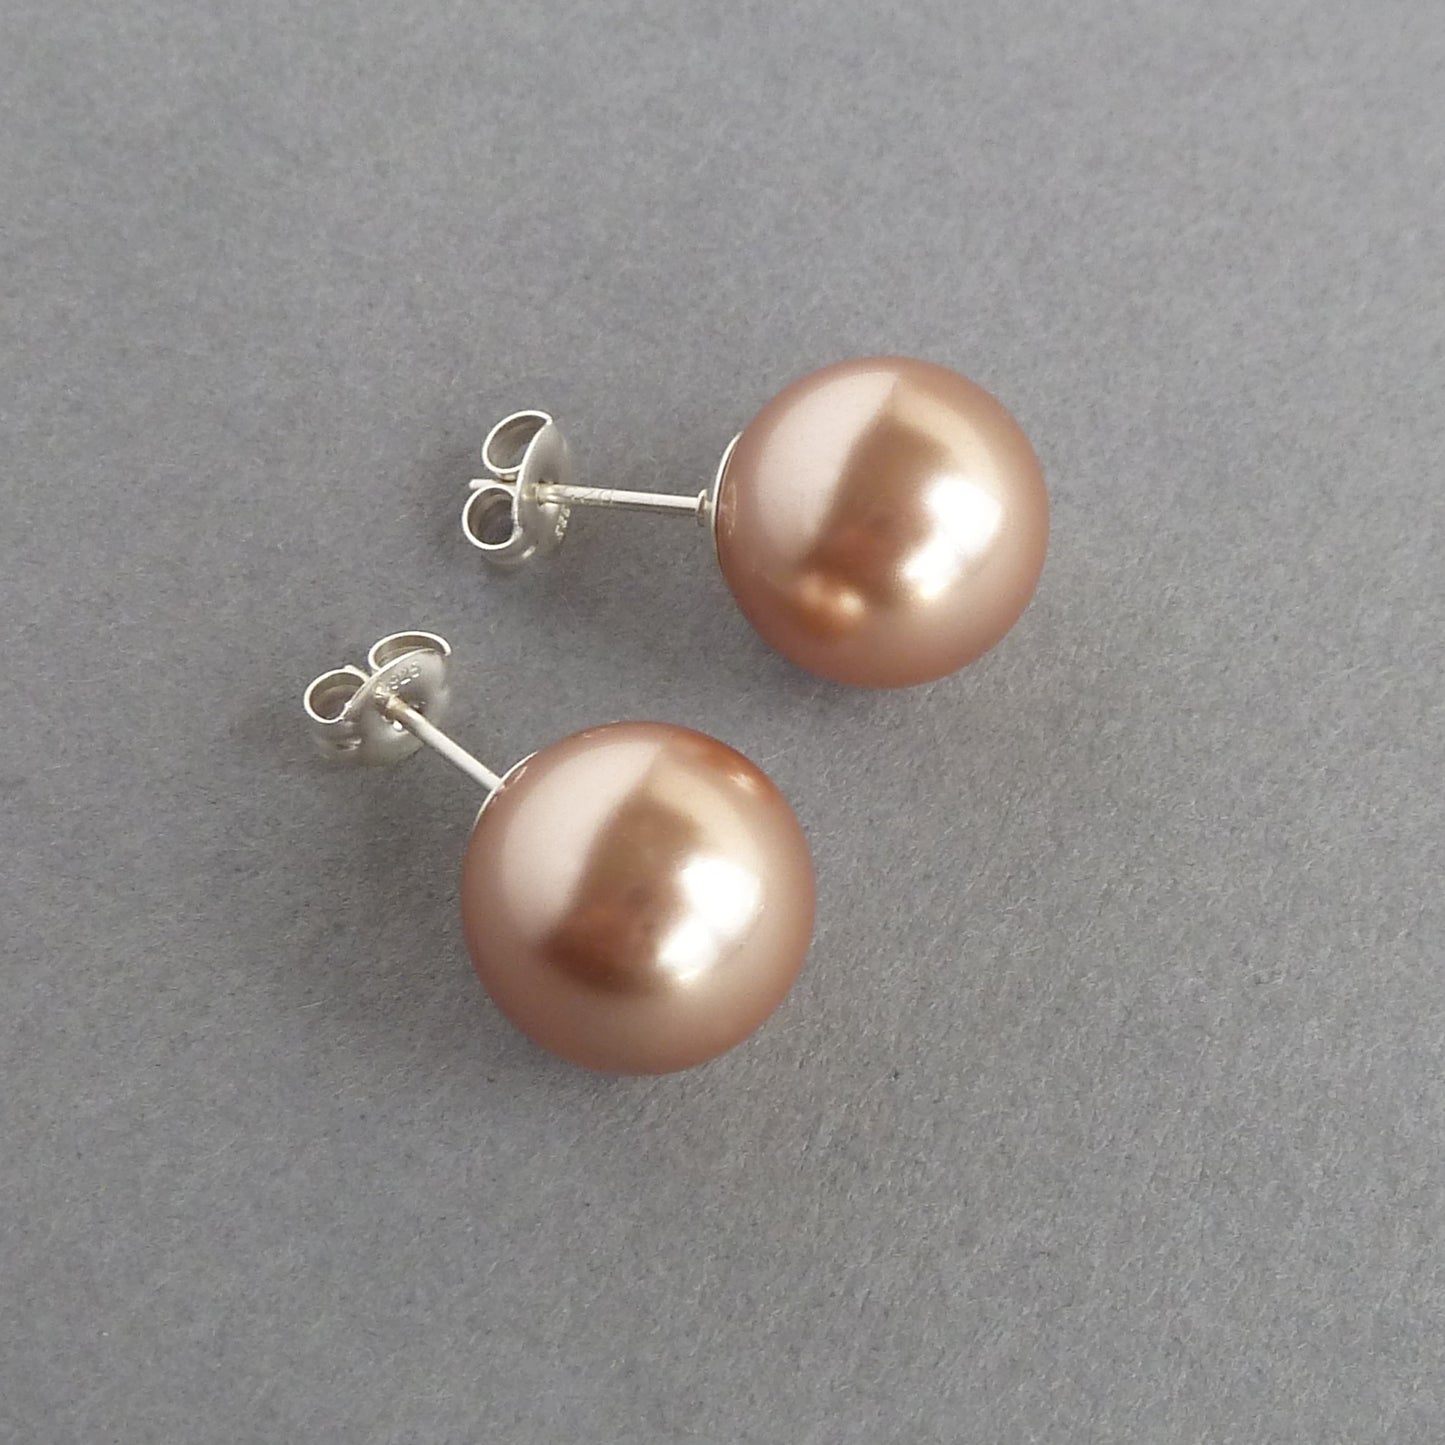 Copper pearl stud earrings